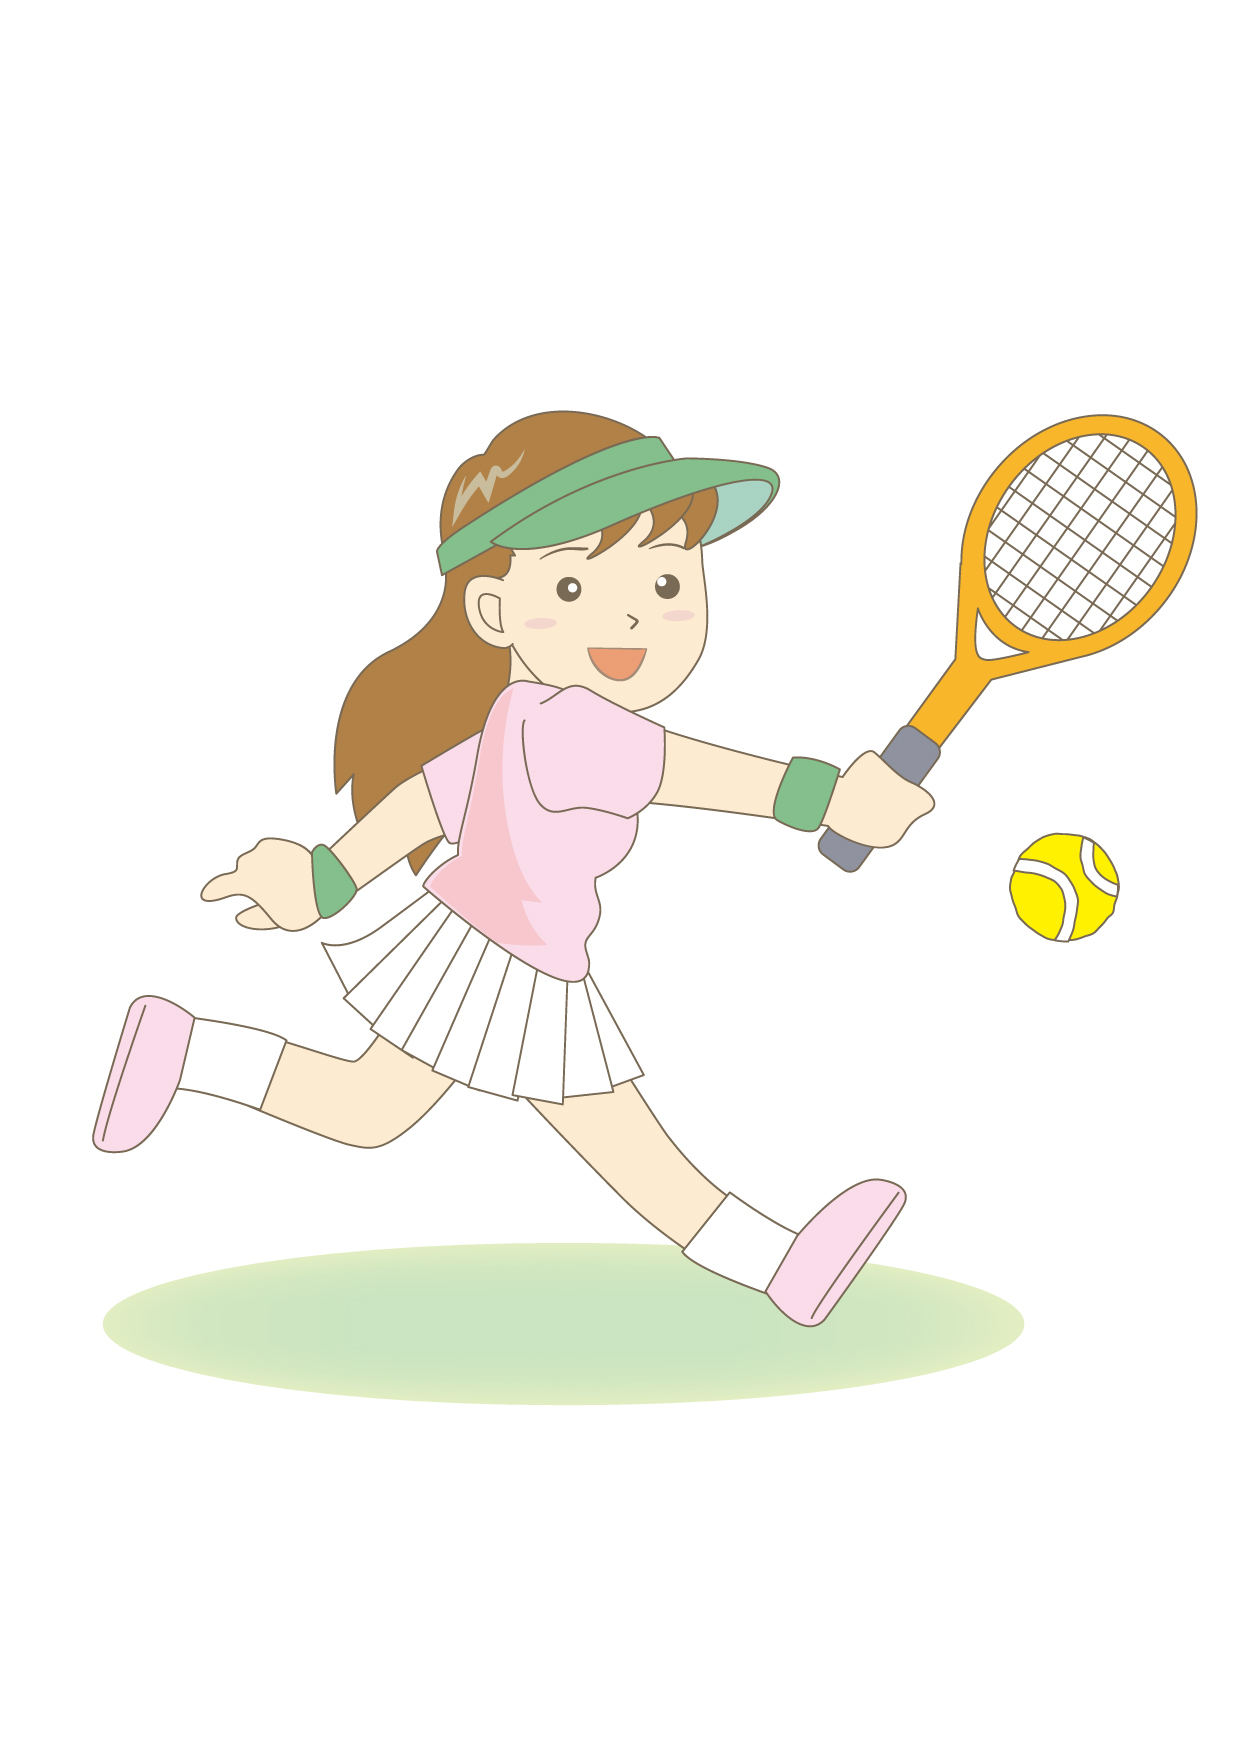 【南草津】2020年12月28日・29日  早朝テニスレッスン受講生募集！4歳からOK！寒い朝をテニスで吹き飛ばそう！